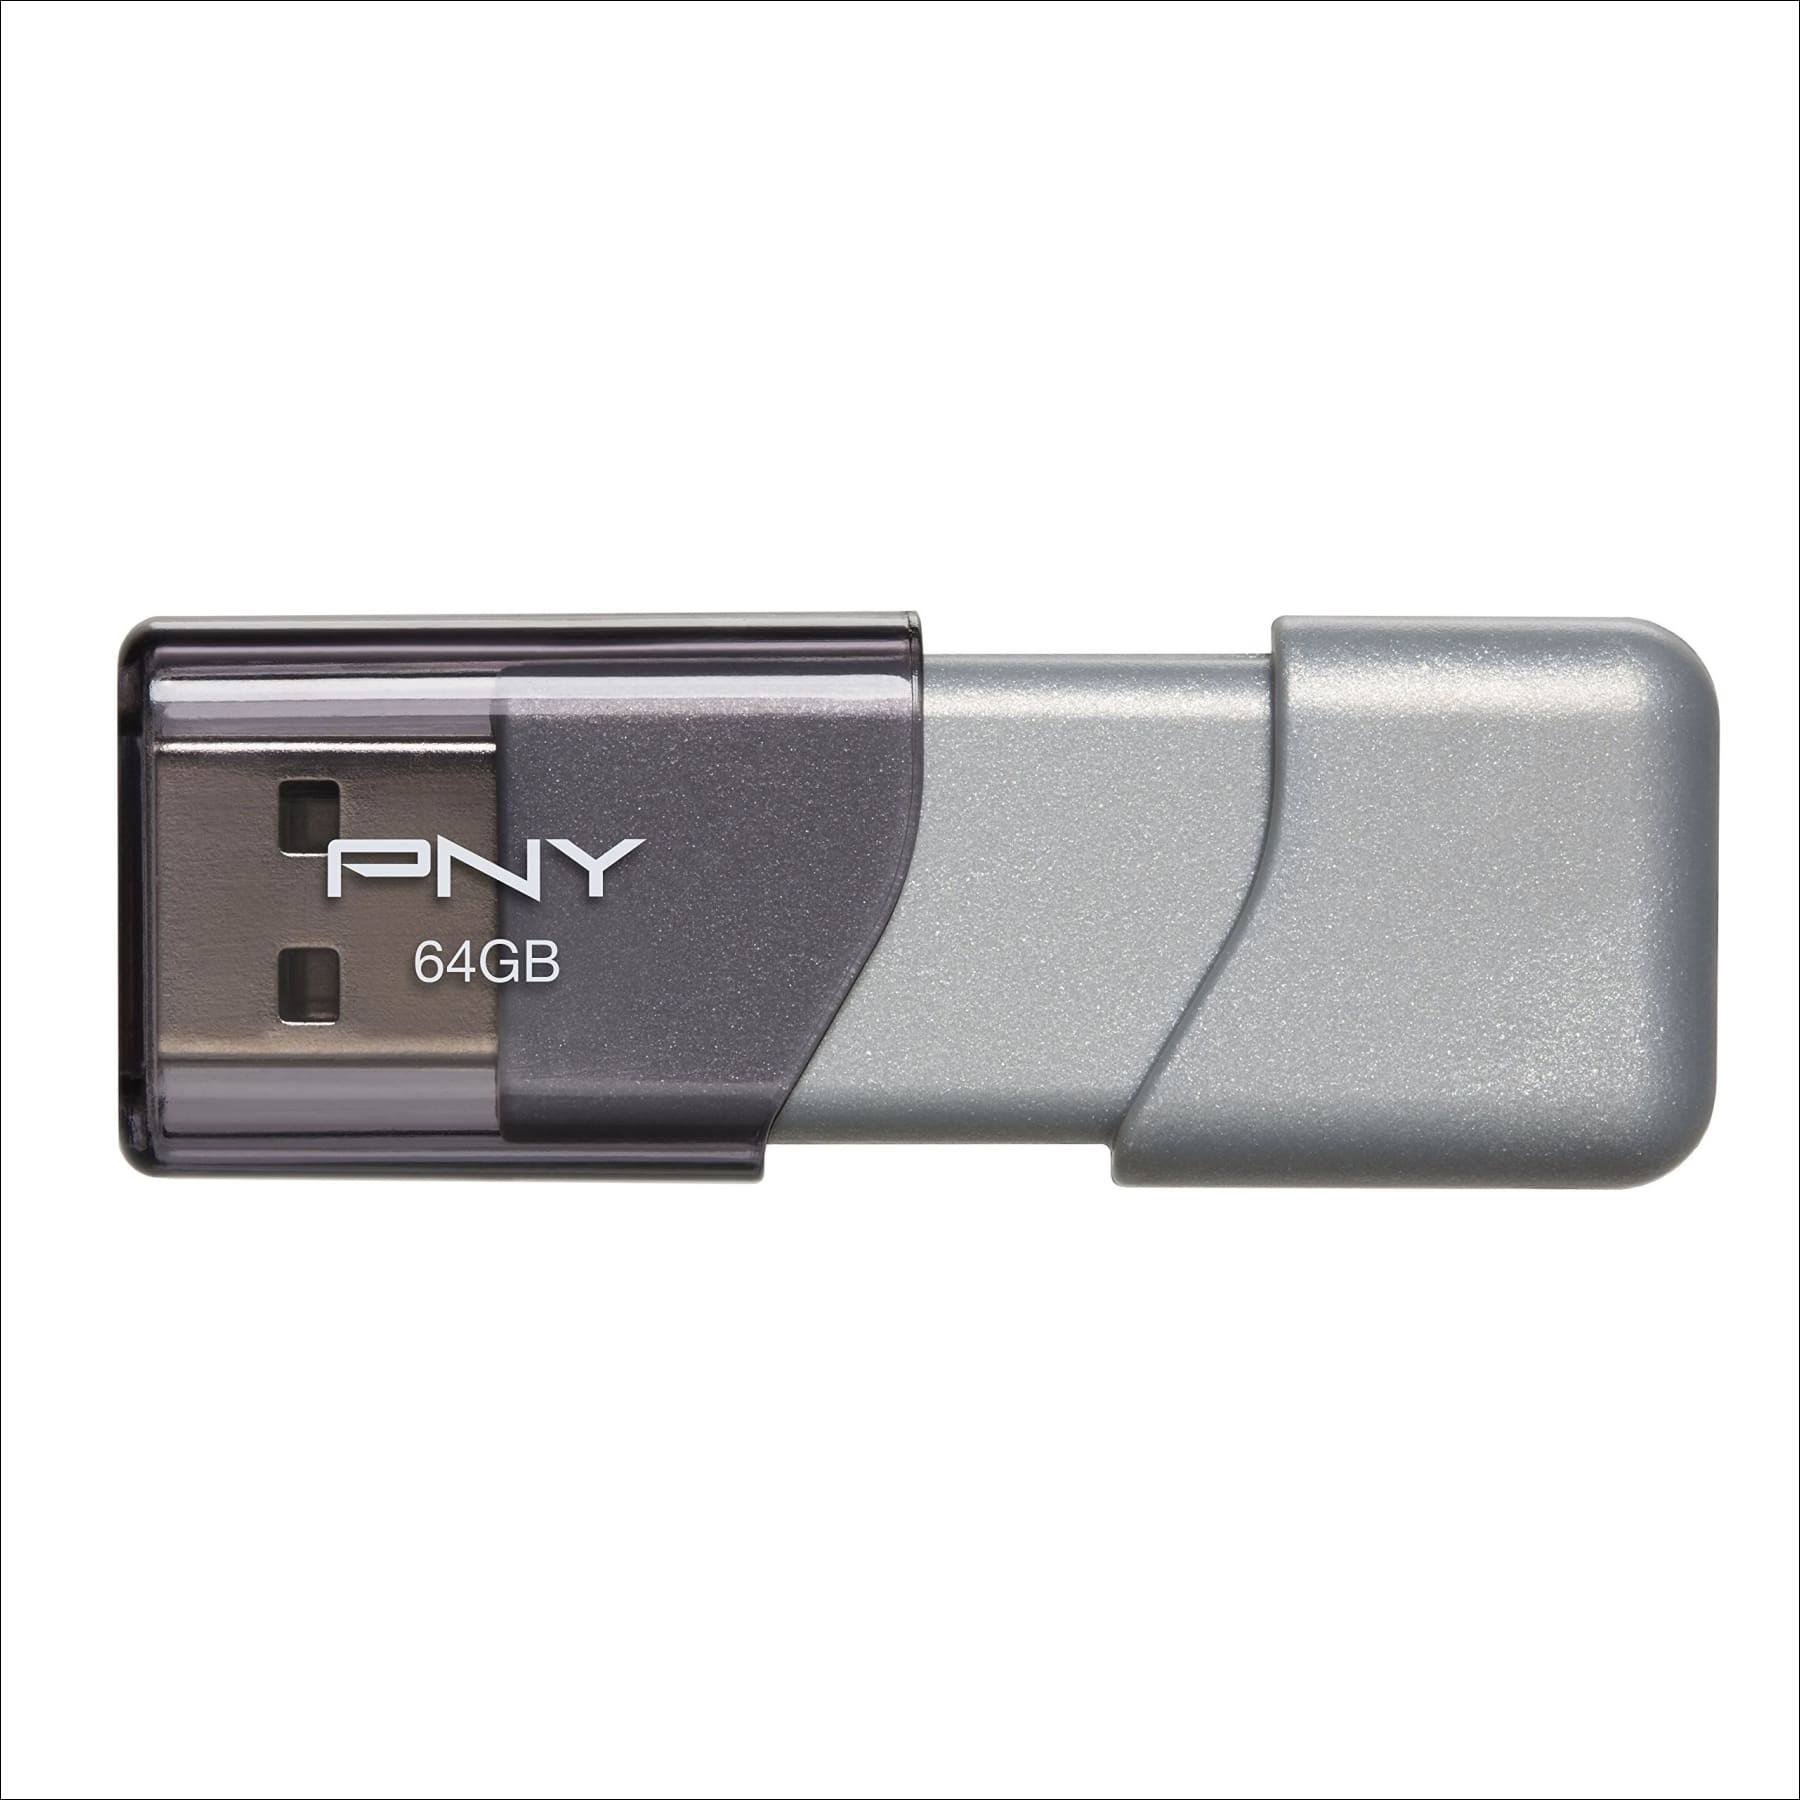 Pny Turbo USB 3.0 Flash Drive - 64gb